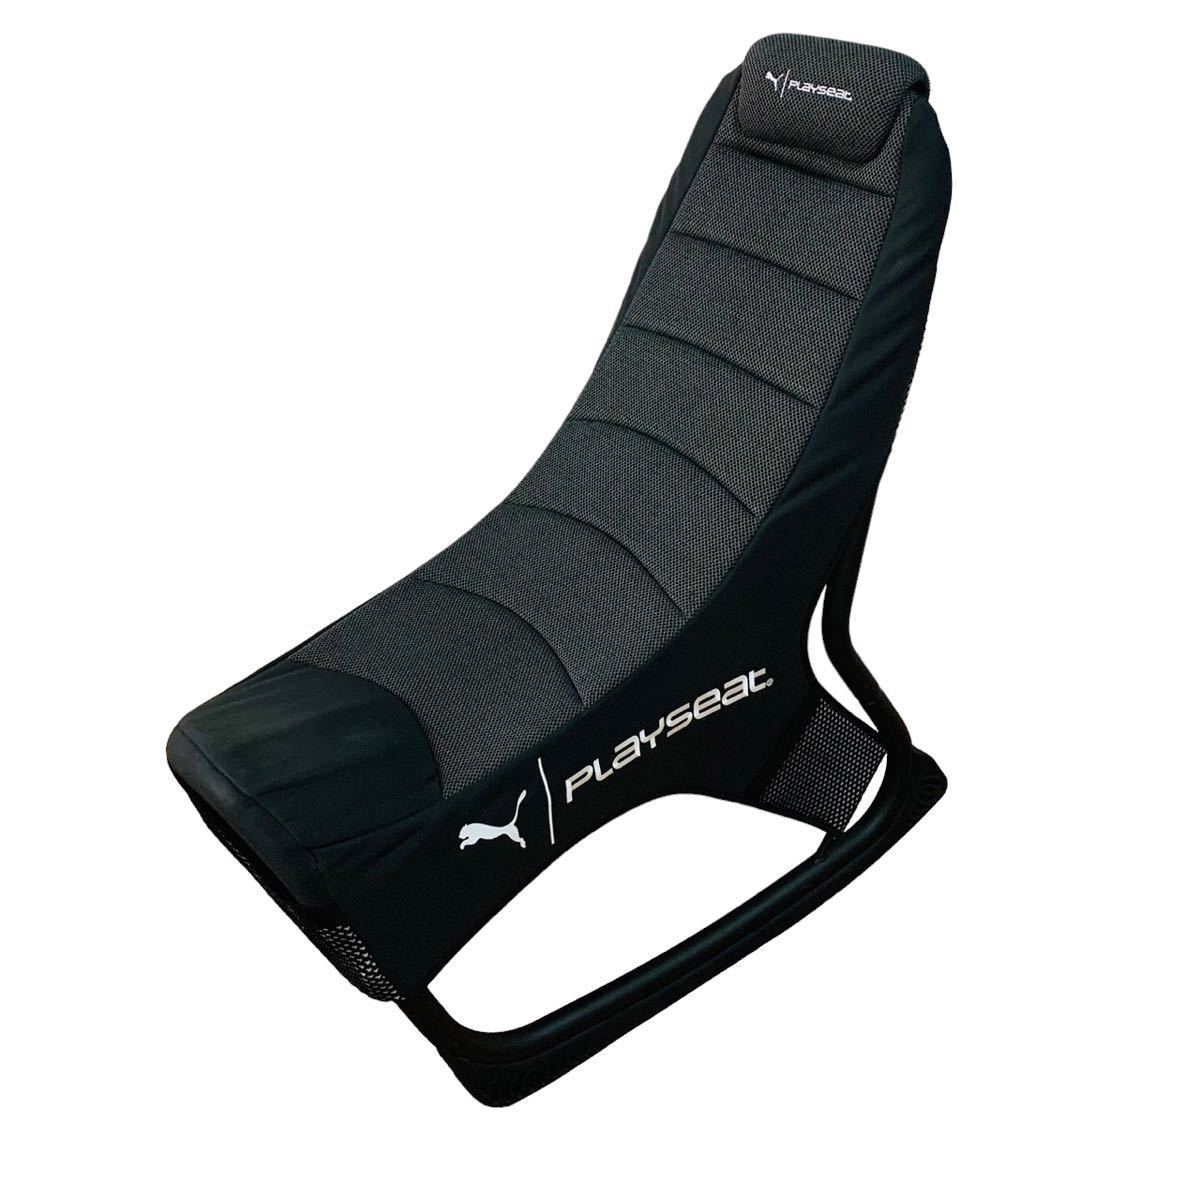 プーマ×プレイシート PUMA Active Gaming Seat Black アクティブゲーミングチェア playseat 椅子 イス チェア ブラック テレビゲーム